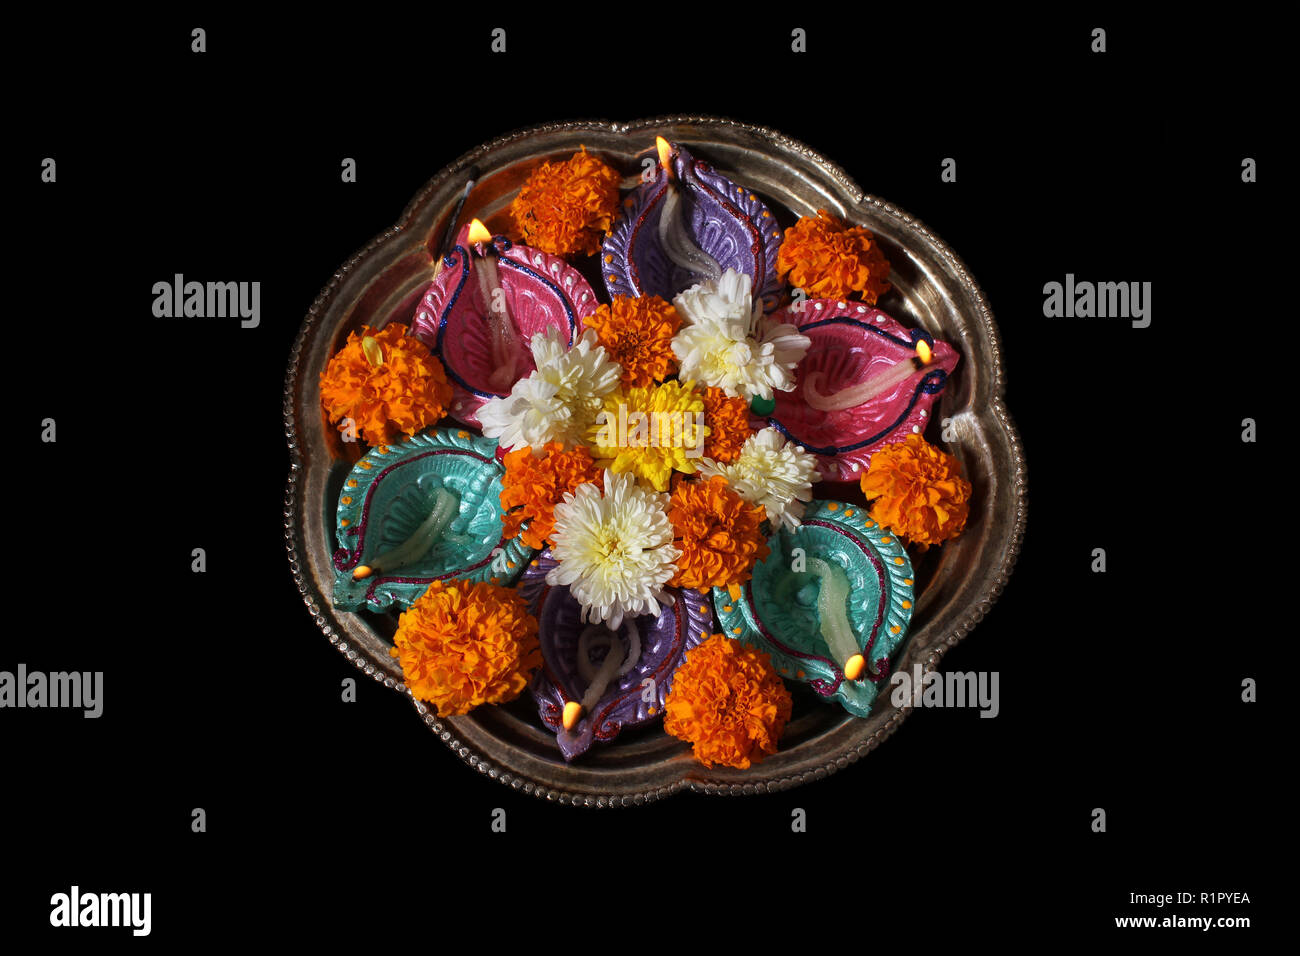 Eine Platte für die traditionelle hinduistische Rituale mit Lampen und Blumen während Diwali Festival in Indien verwendet. Stockfoto